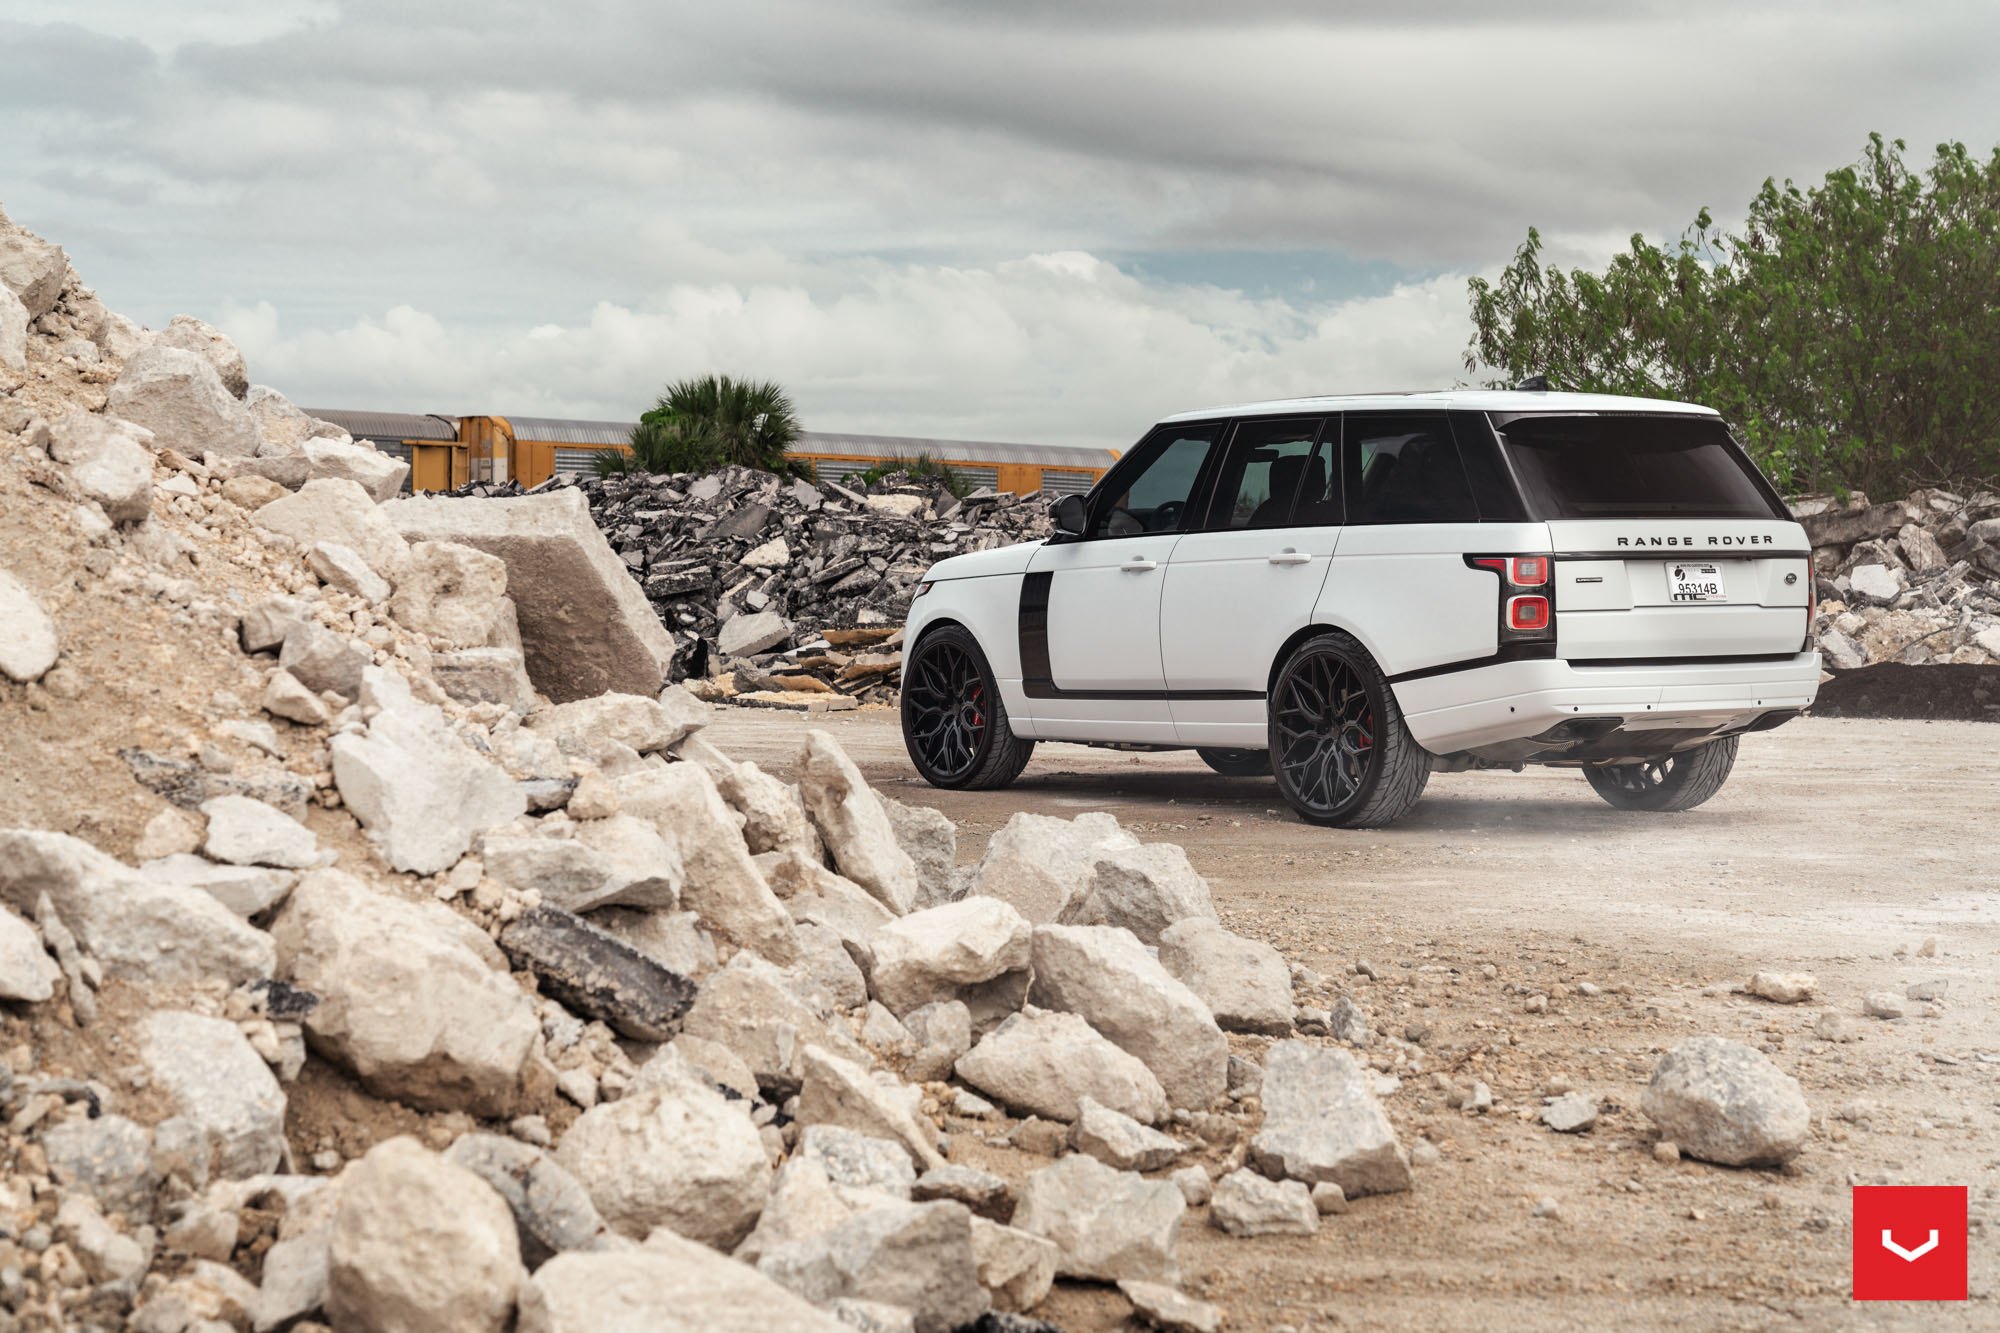 Custom Roofline Spoiler on White Range Rover - Photo by Vossen Wheels